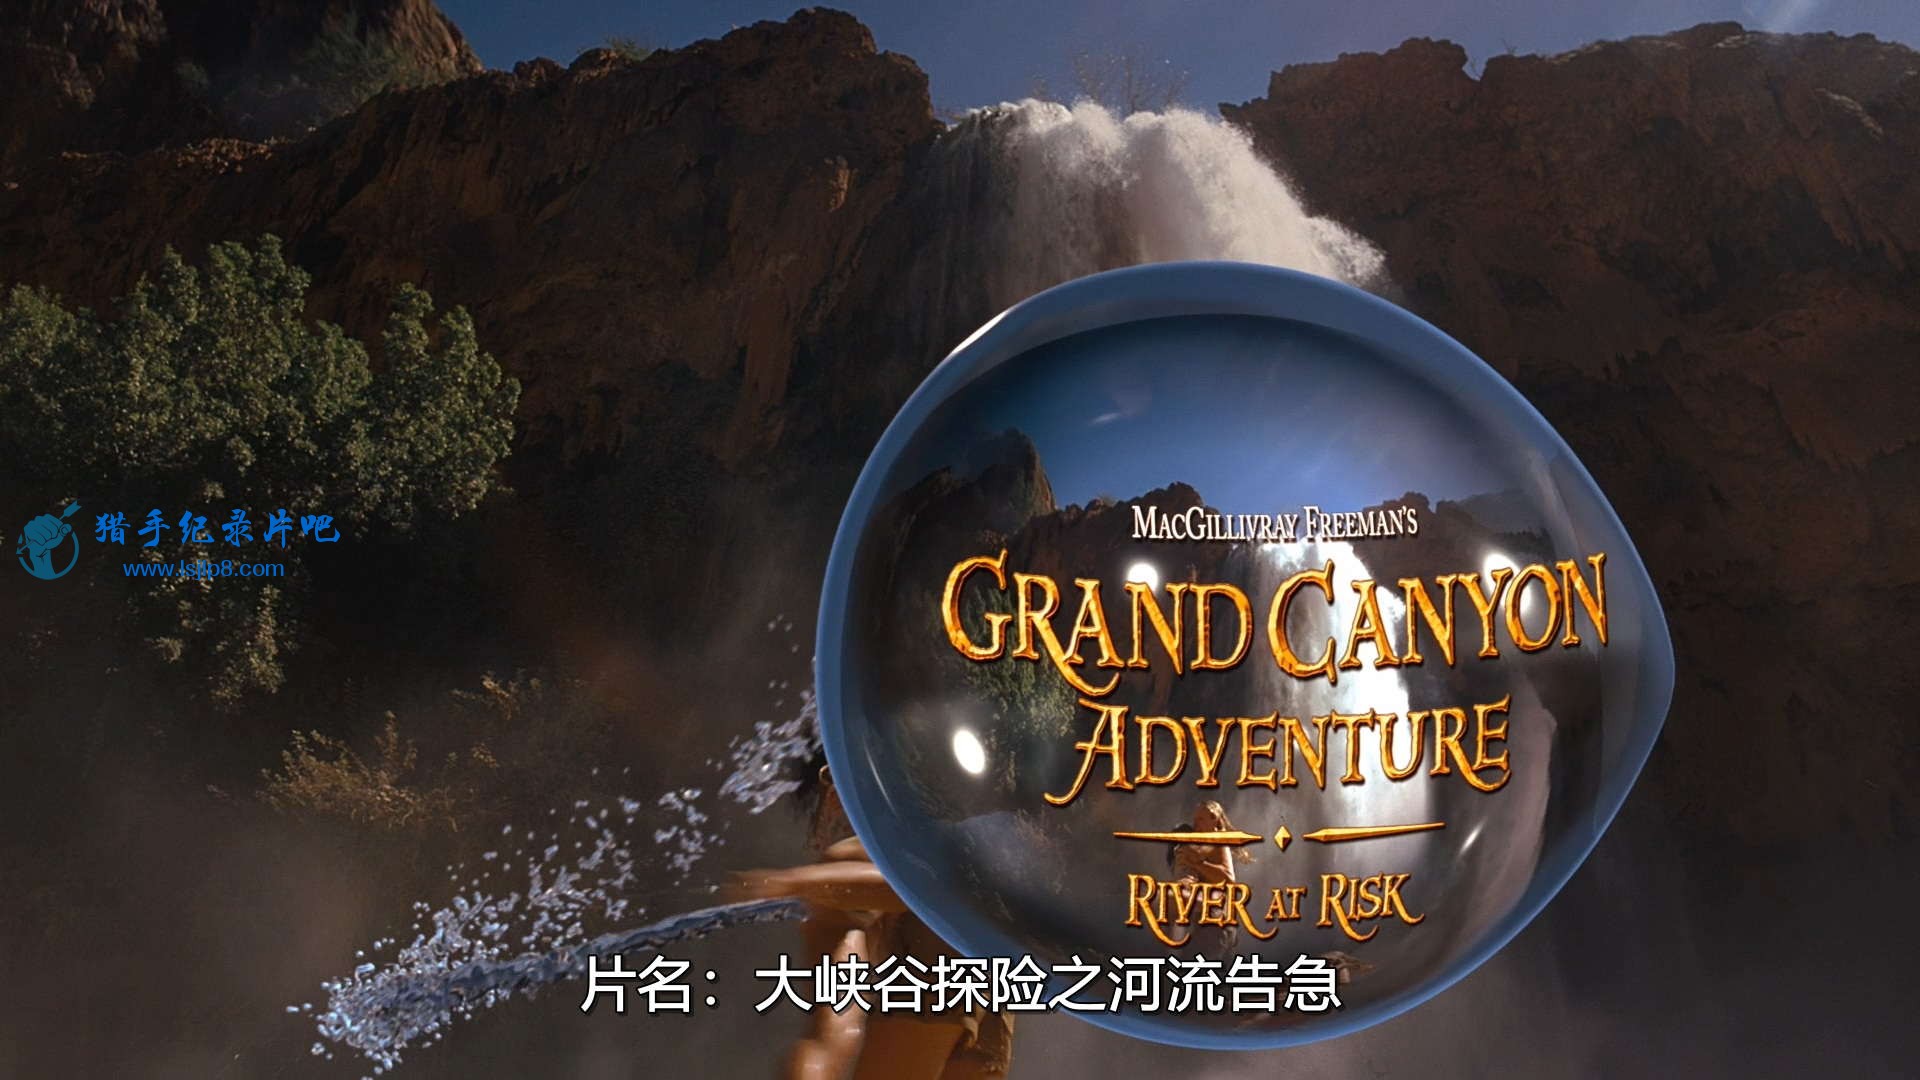 IMAX Grand Canyon Adventure River at Risk 2008 BDRip 1080p x264 DTS Audio-CHD.mk.jpg